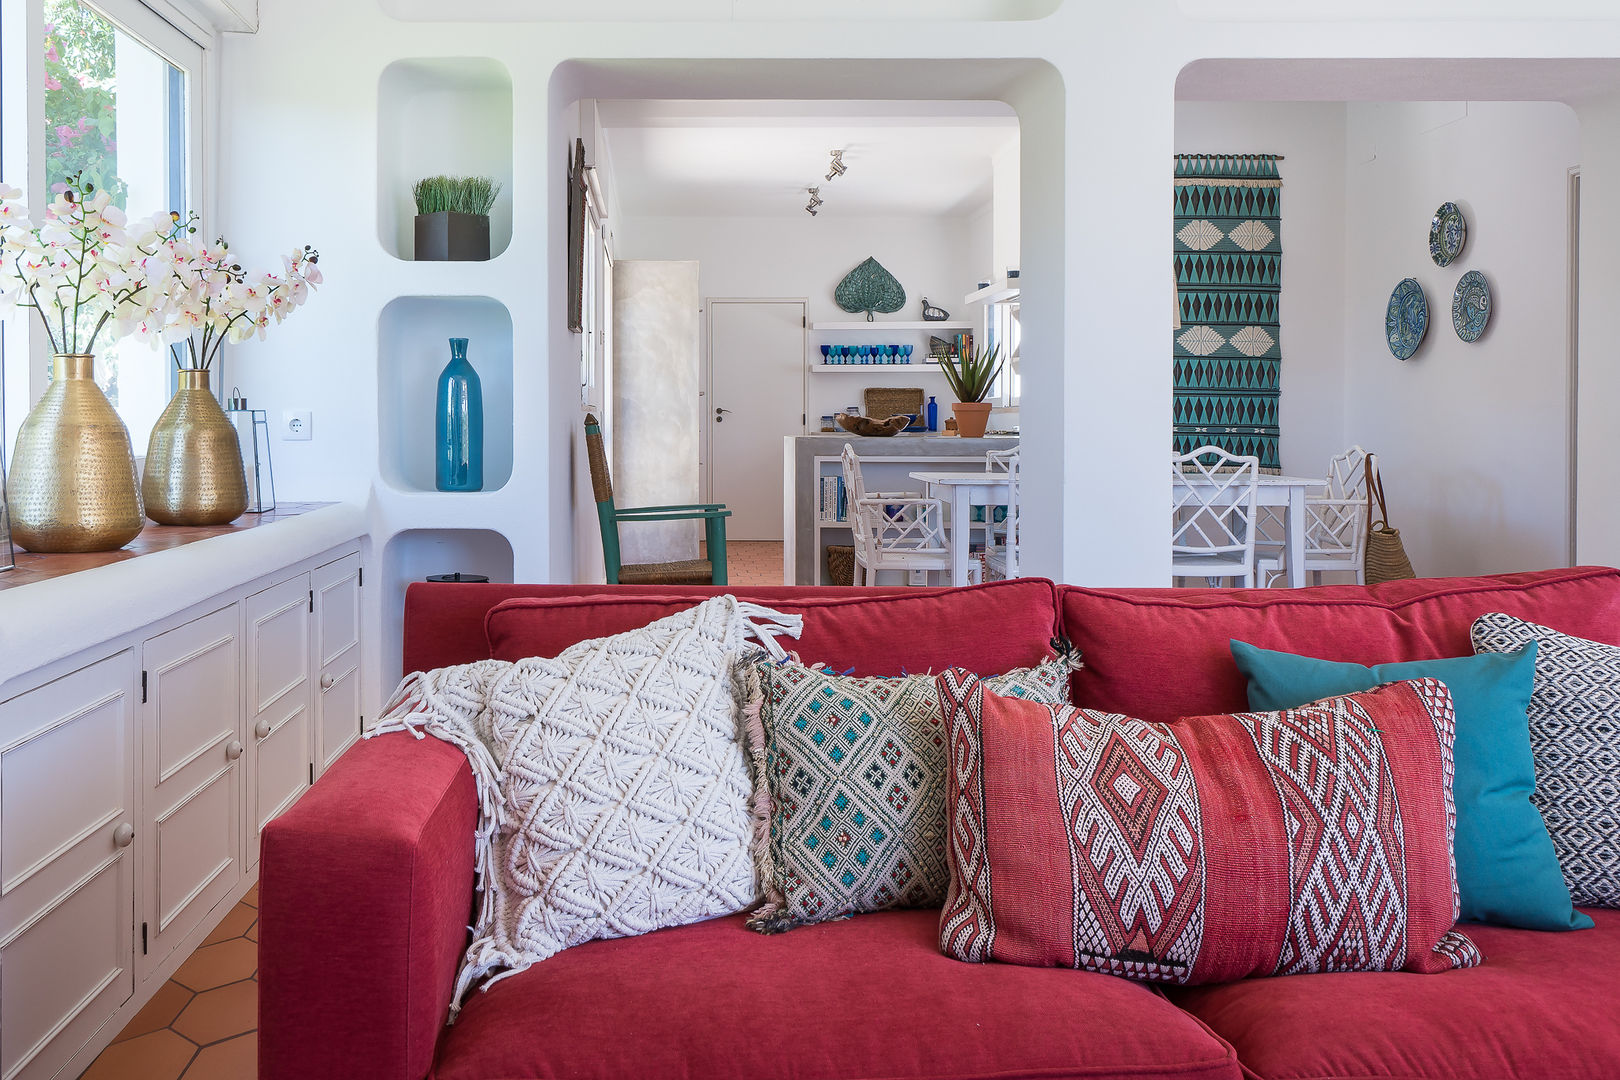 Casa de férias no Algarve, The Interiors Online The Interiors Online Salas de estilo ecléctico